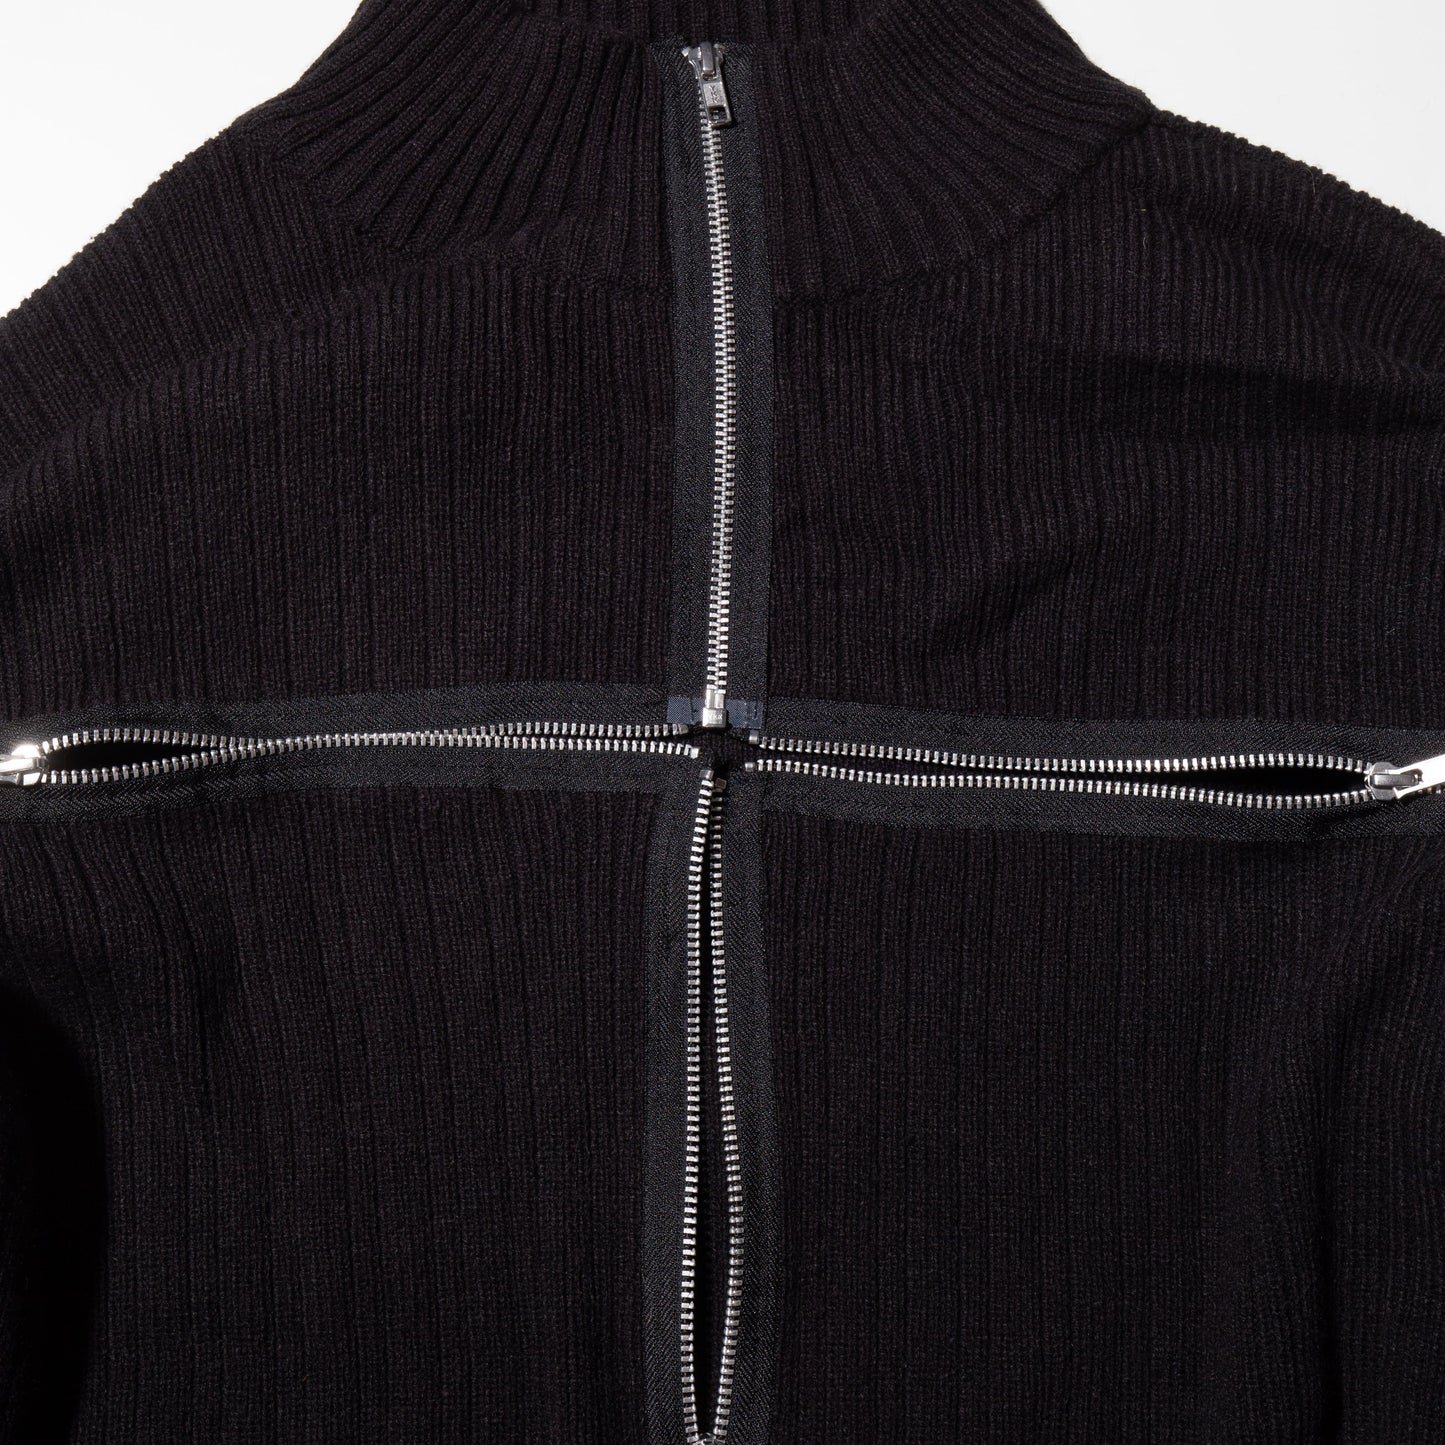 remake cross zip sweater